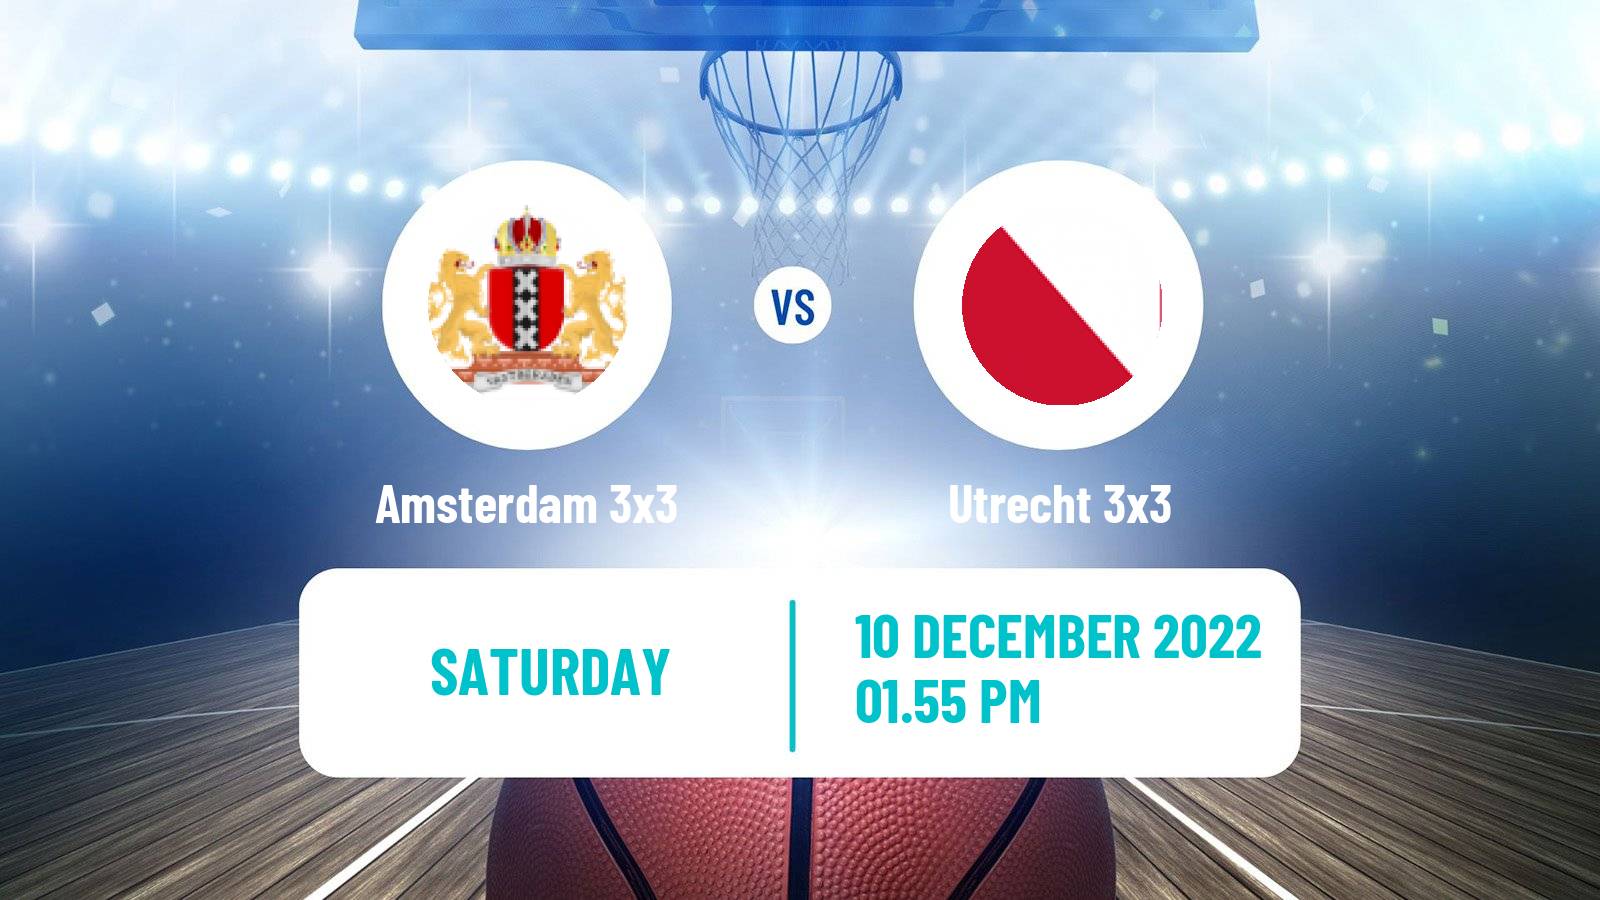 Basketball World Tour Final 3x3 Amsterdam 3x3 - Utrecht 3x3